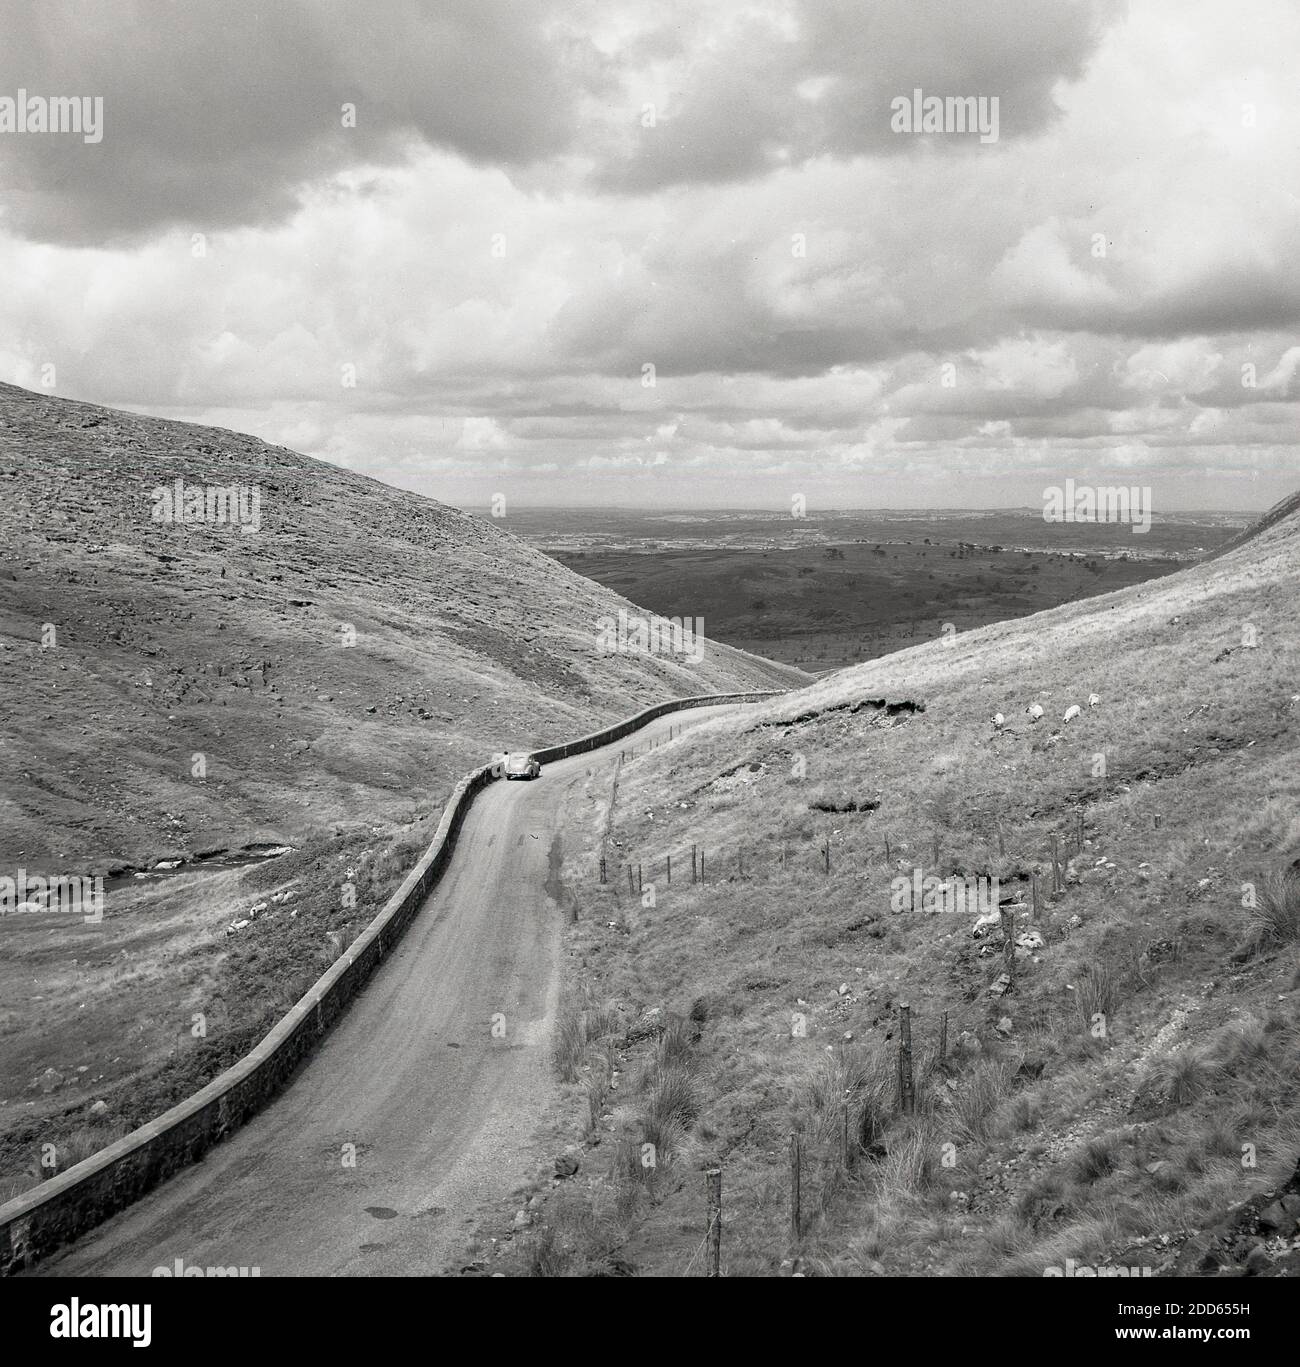 Années 1950, photo historique de j Allan Cash, une voiture de l'époque garée sur une route de campagne vide sur la spectaculaire route côtière de la chaussée d'Antrim, Irlande du Nord, Royaume-Uni. Banque D'Images